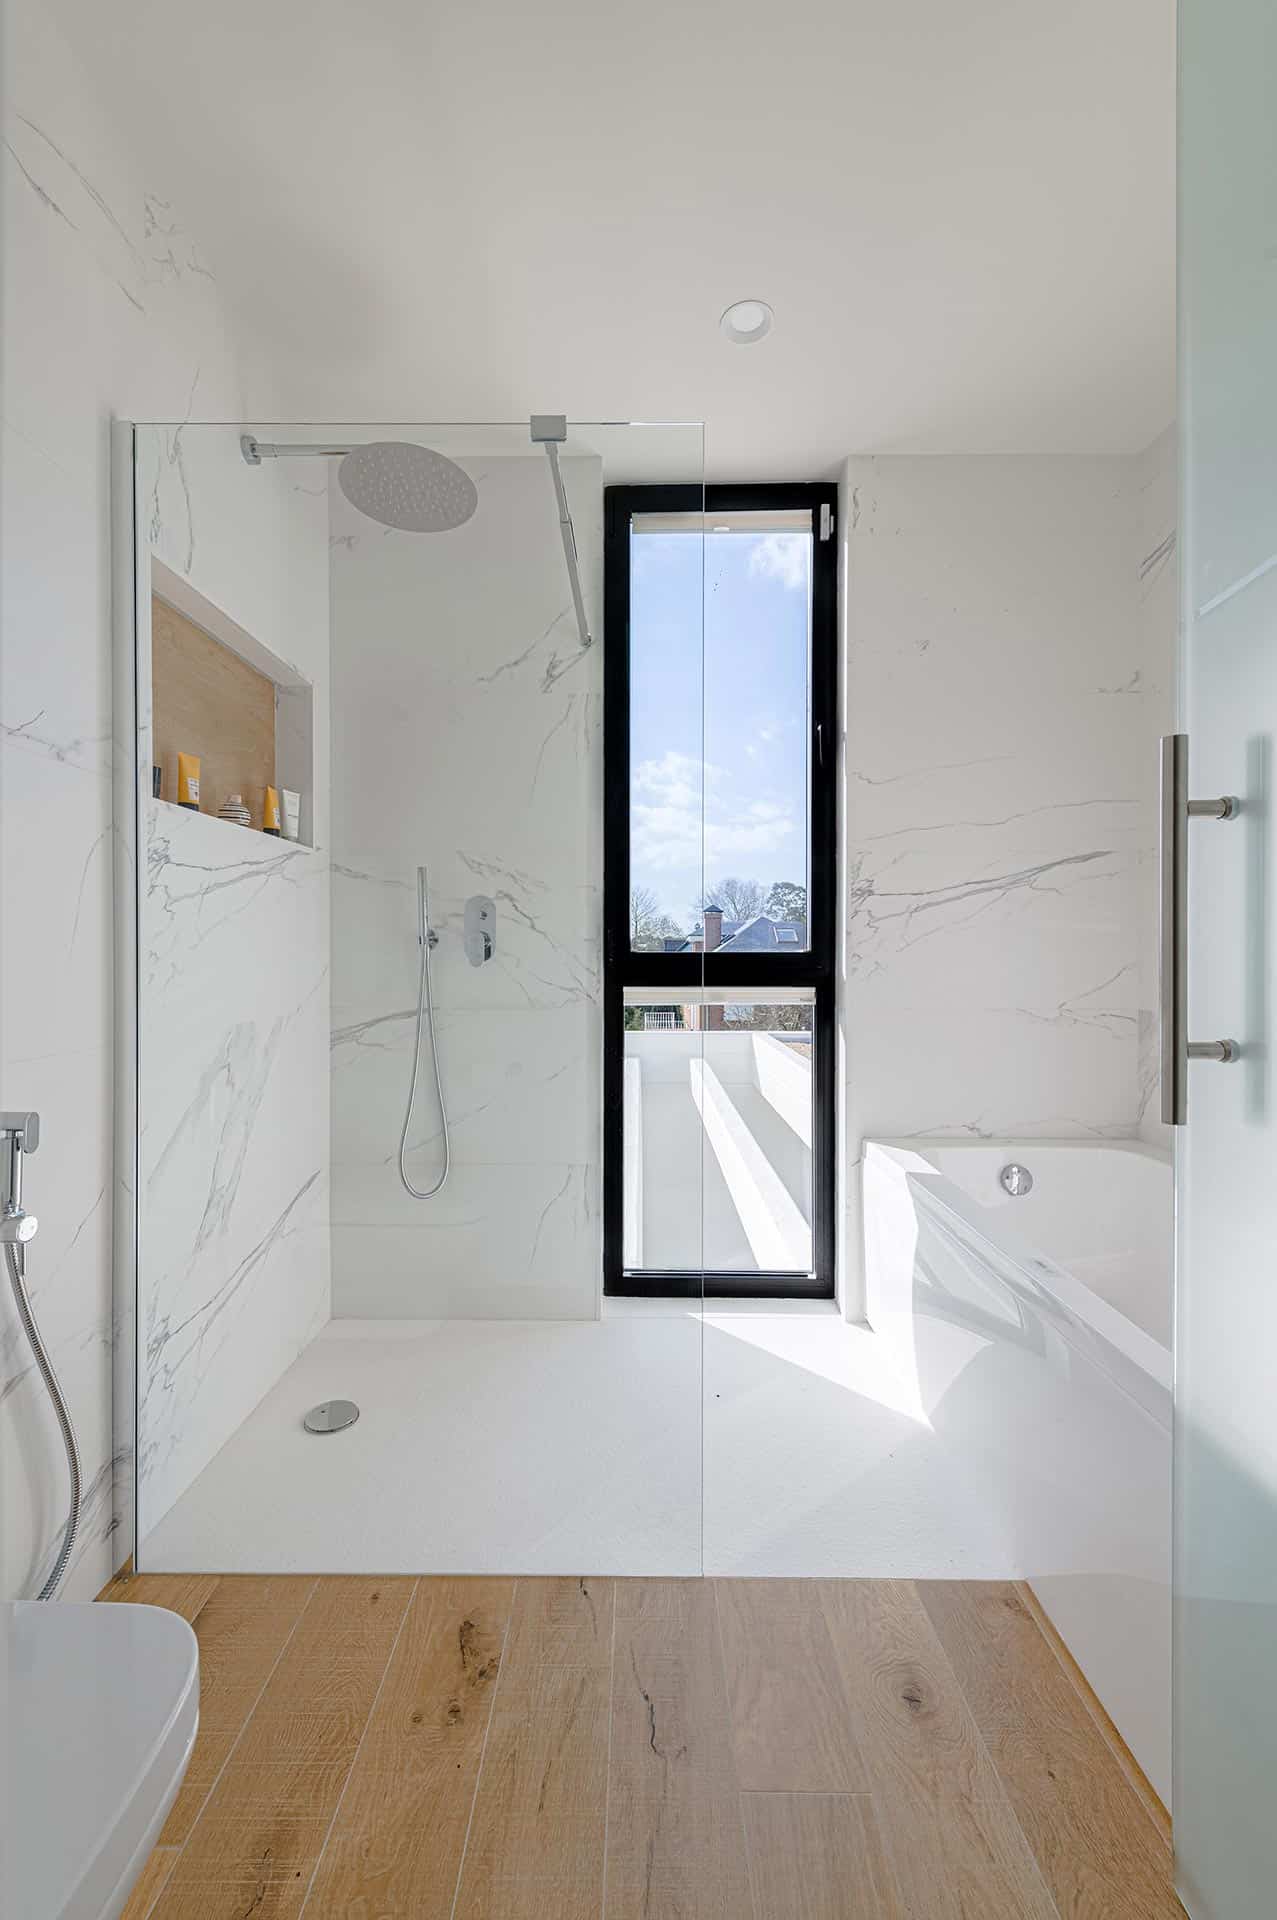 Baño de mármol blanco de casa moderana diseñada por Moah Arquitectos en Cantabria